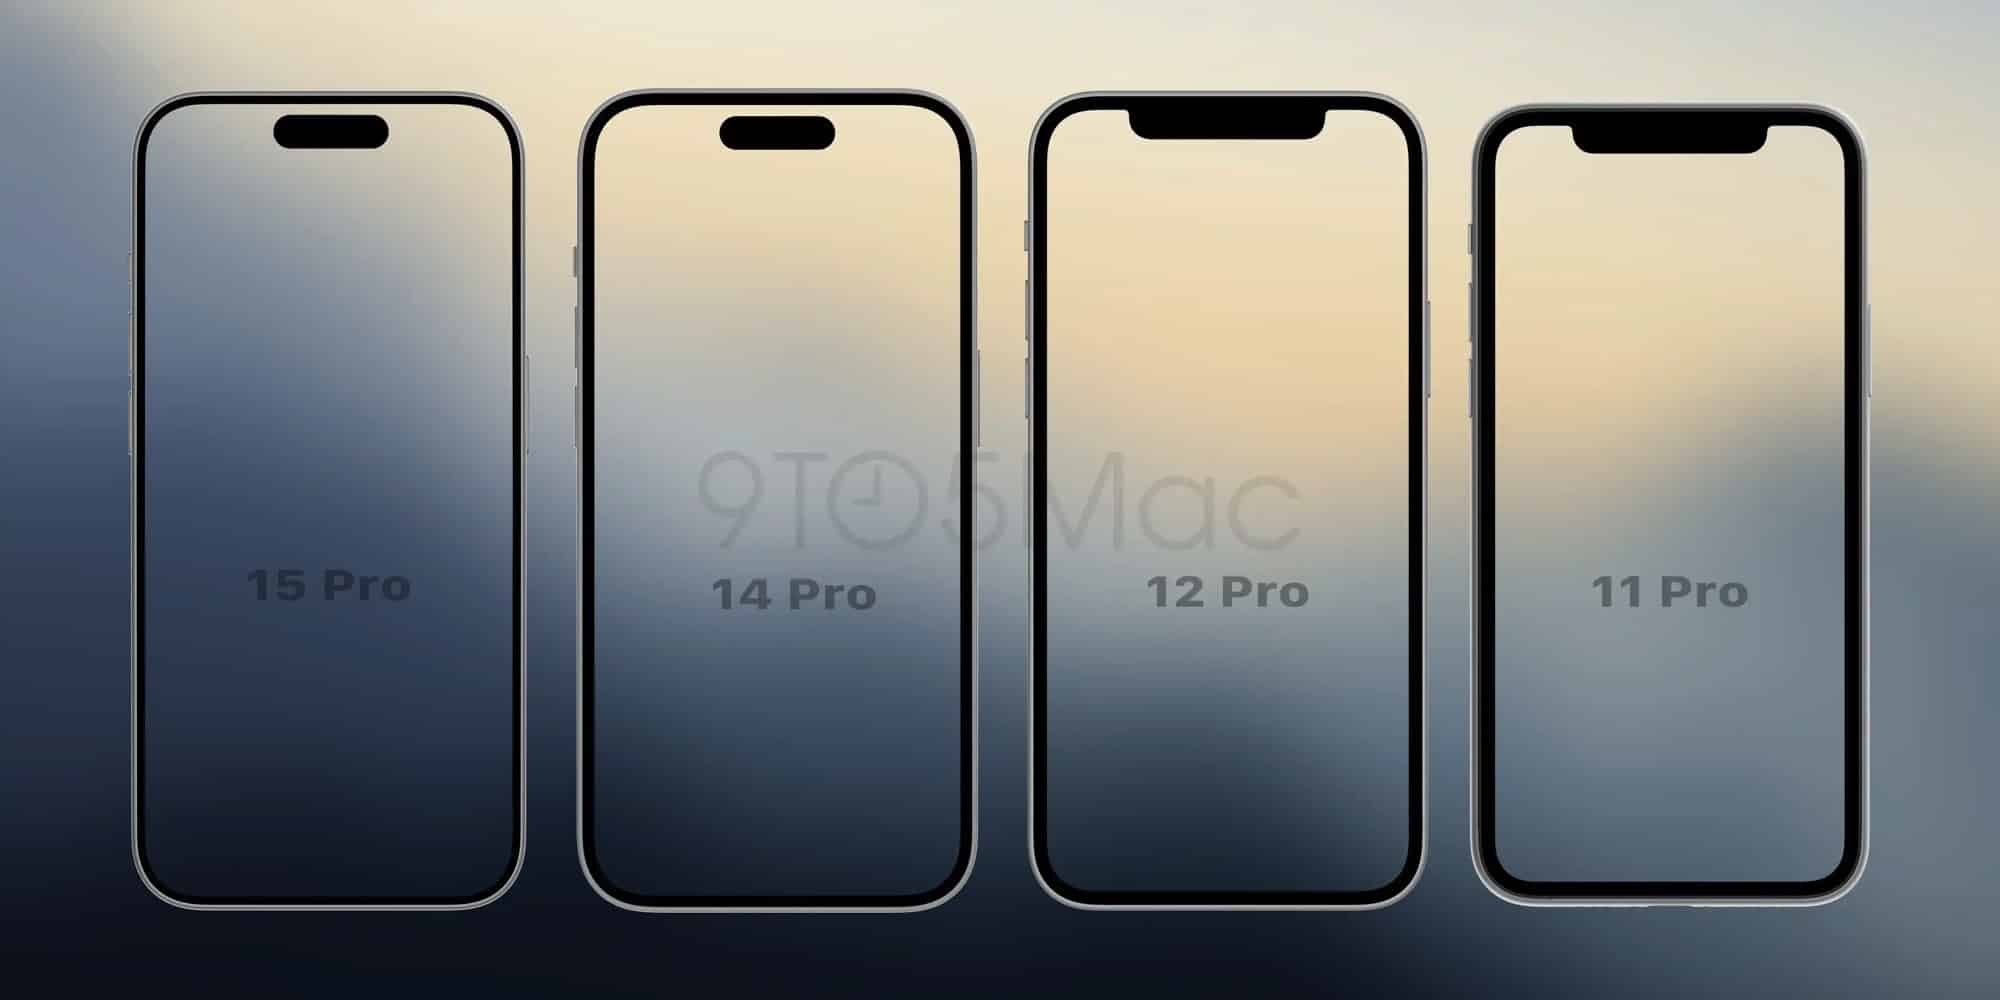 Displayvergleich von iPhone 15 Pro, 14 Pro, 12 Pro und 11 Pro